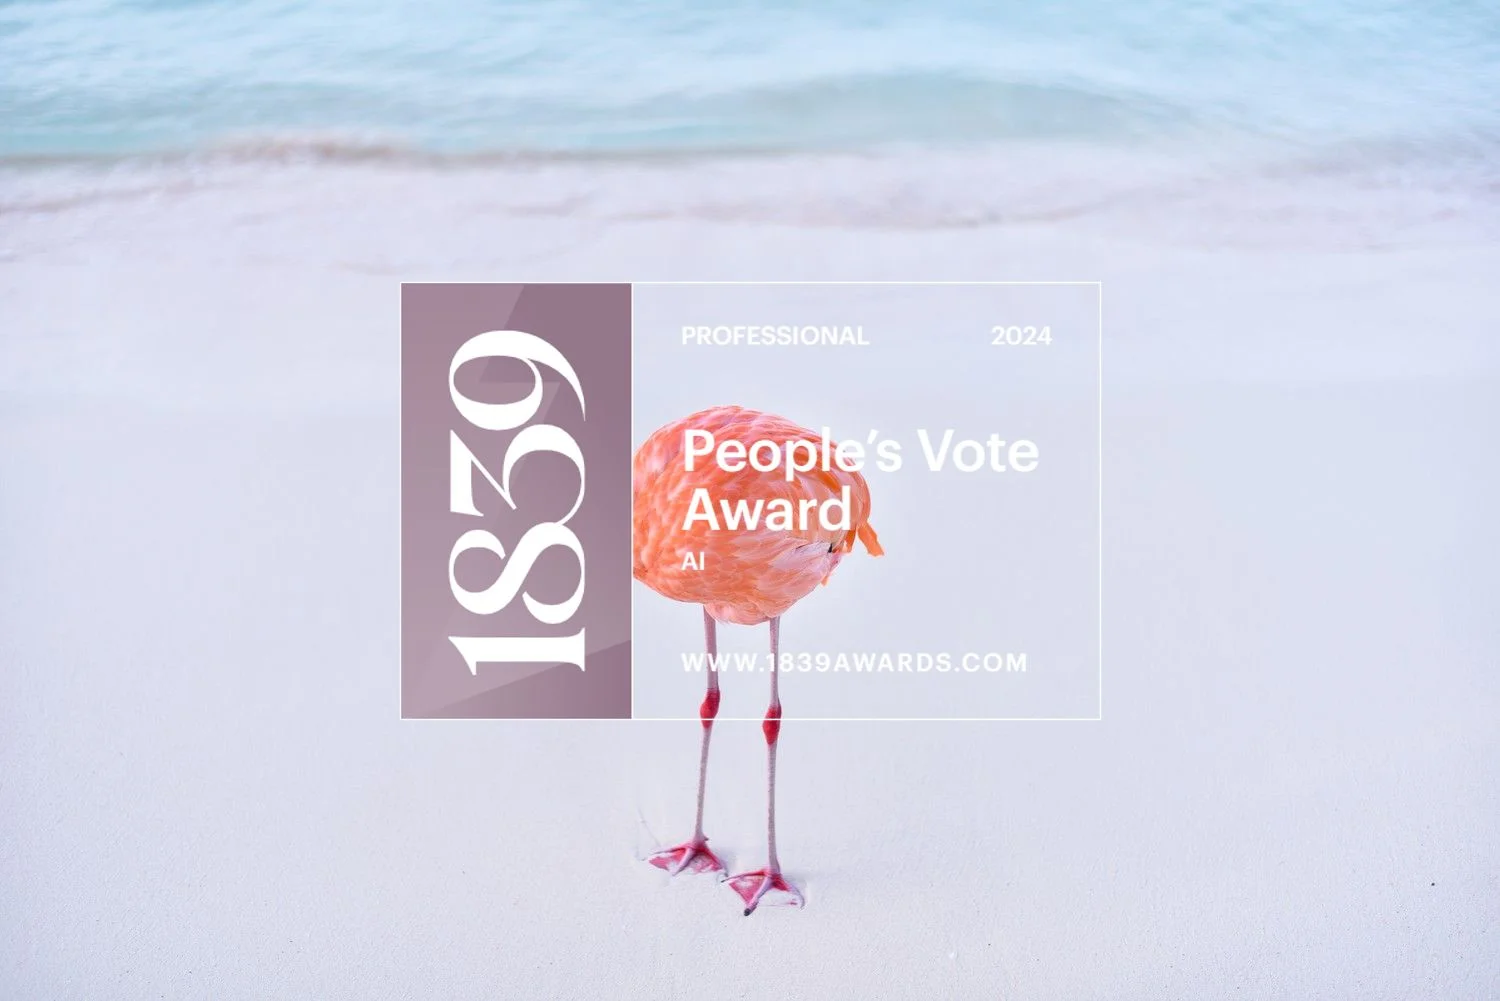 Flamingo on a sandy beach with an award text overlay